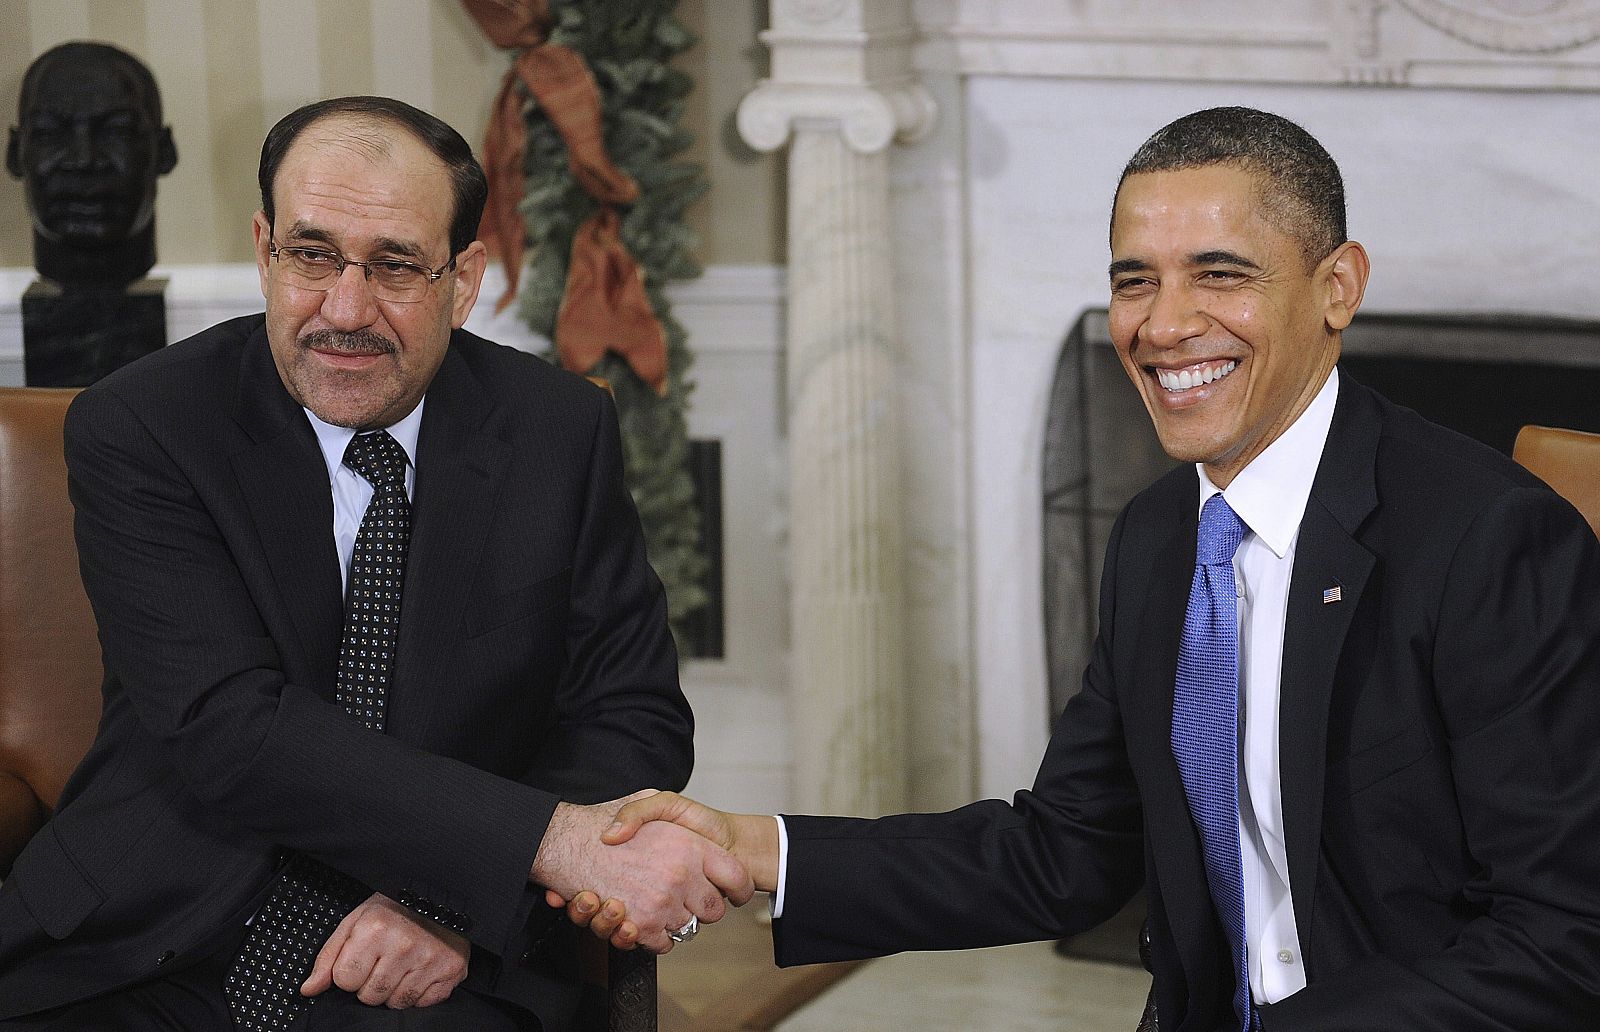 El presidente de los EE.UU., Barack Obama (d), saluda al primer ministro iraquí Nouri al-Maliki, en el Salón Oval de la Casa Blanca